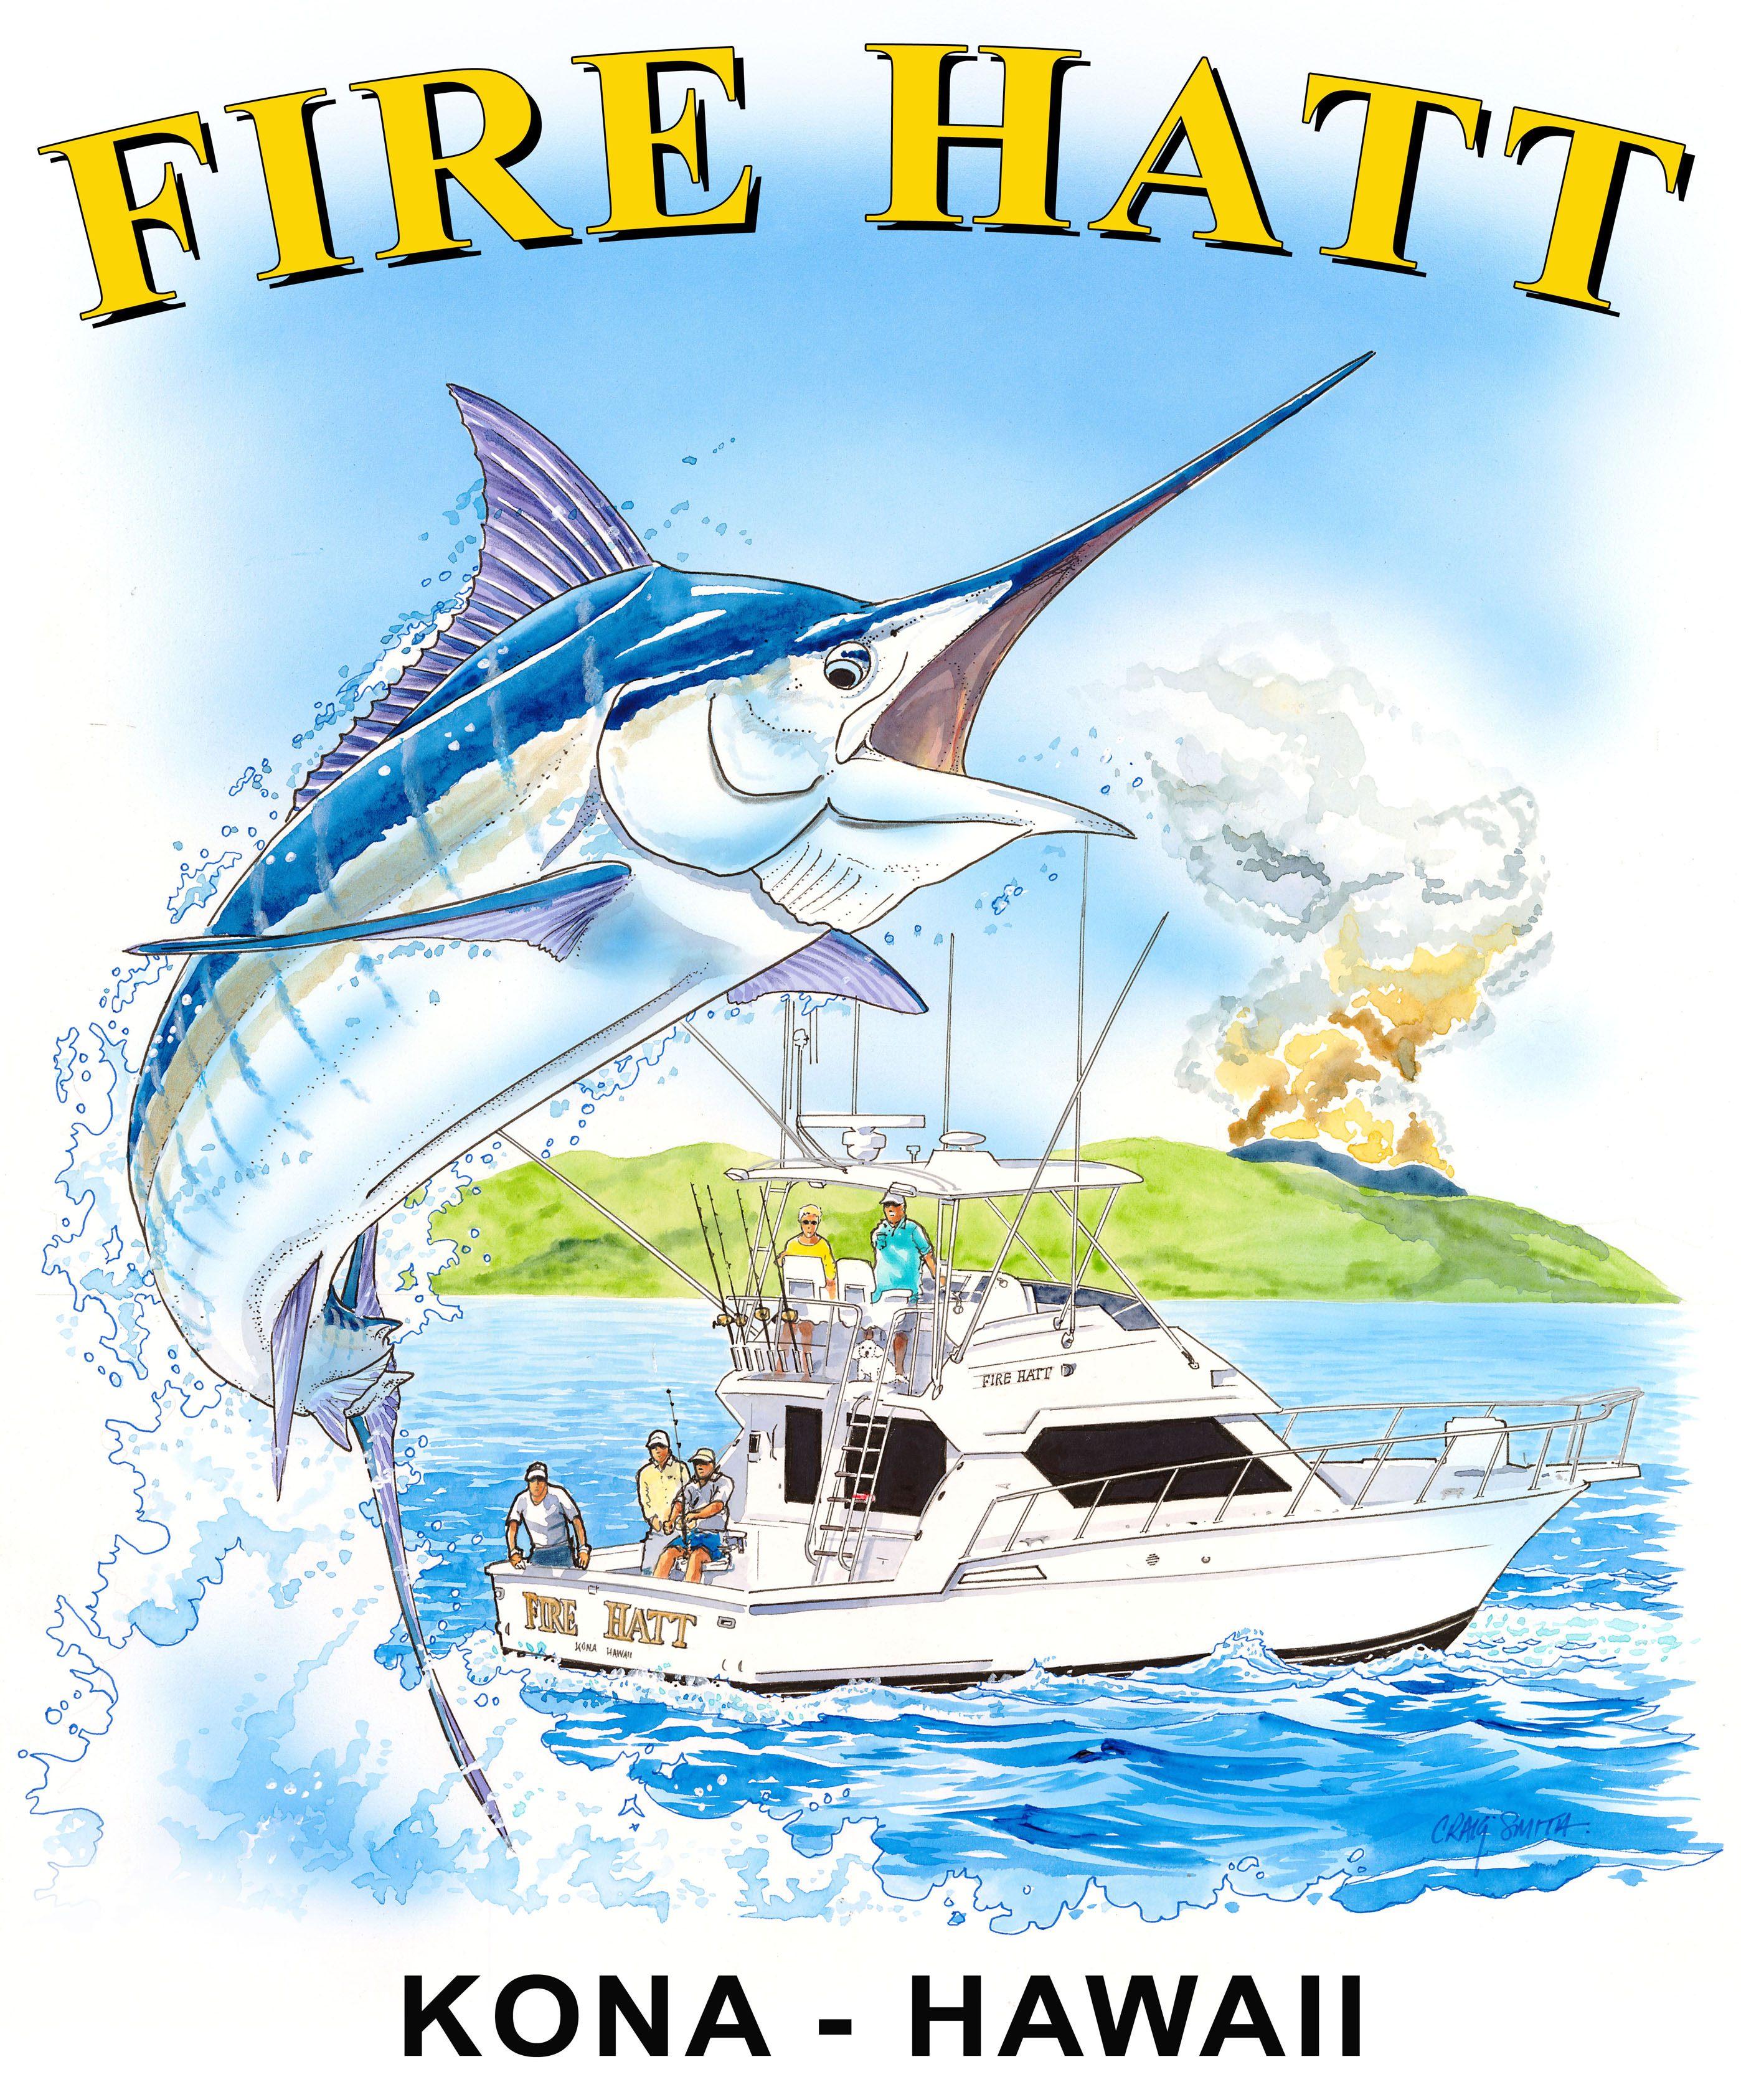 https://firehattsportfishing.com/wp-content/uploads/2012/05/Fire-Hatt-t-s-design-180dpi-print-file-.jpg